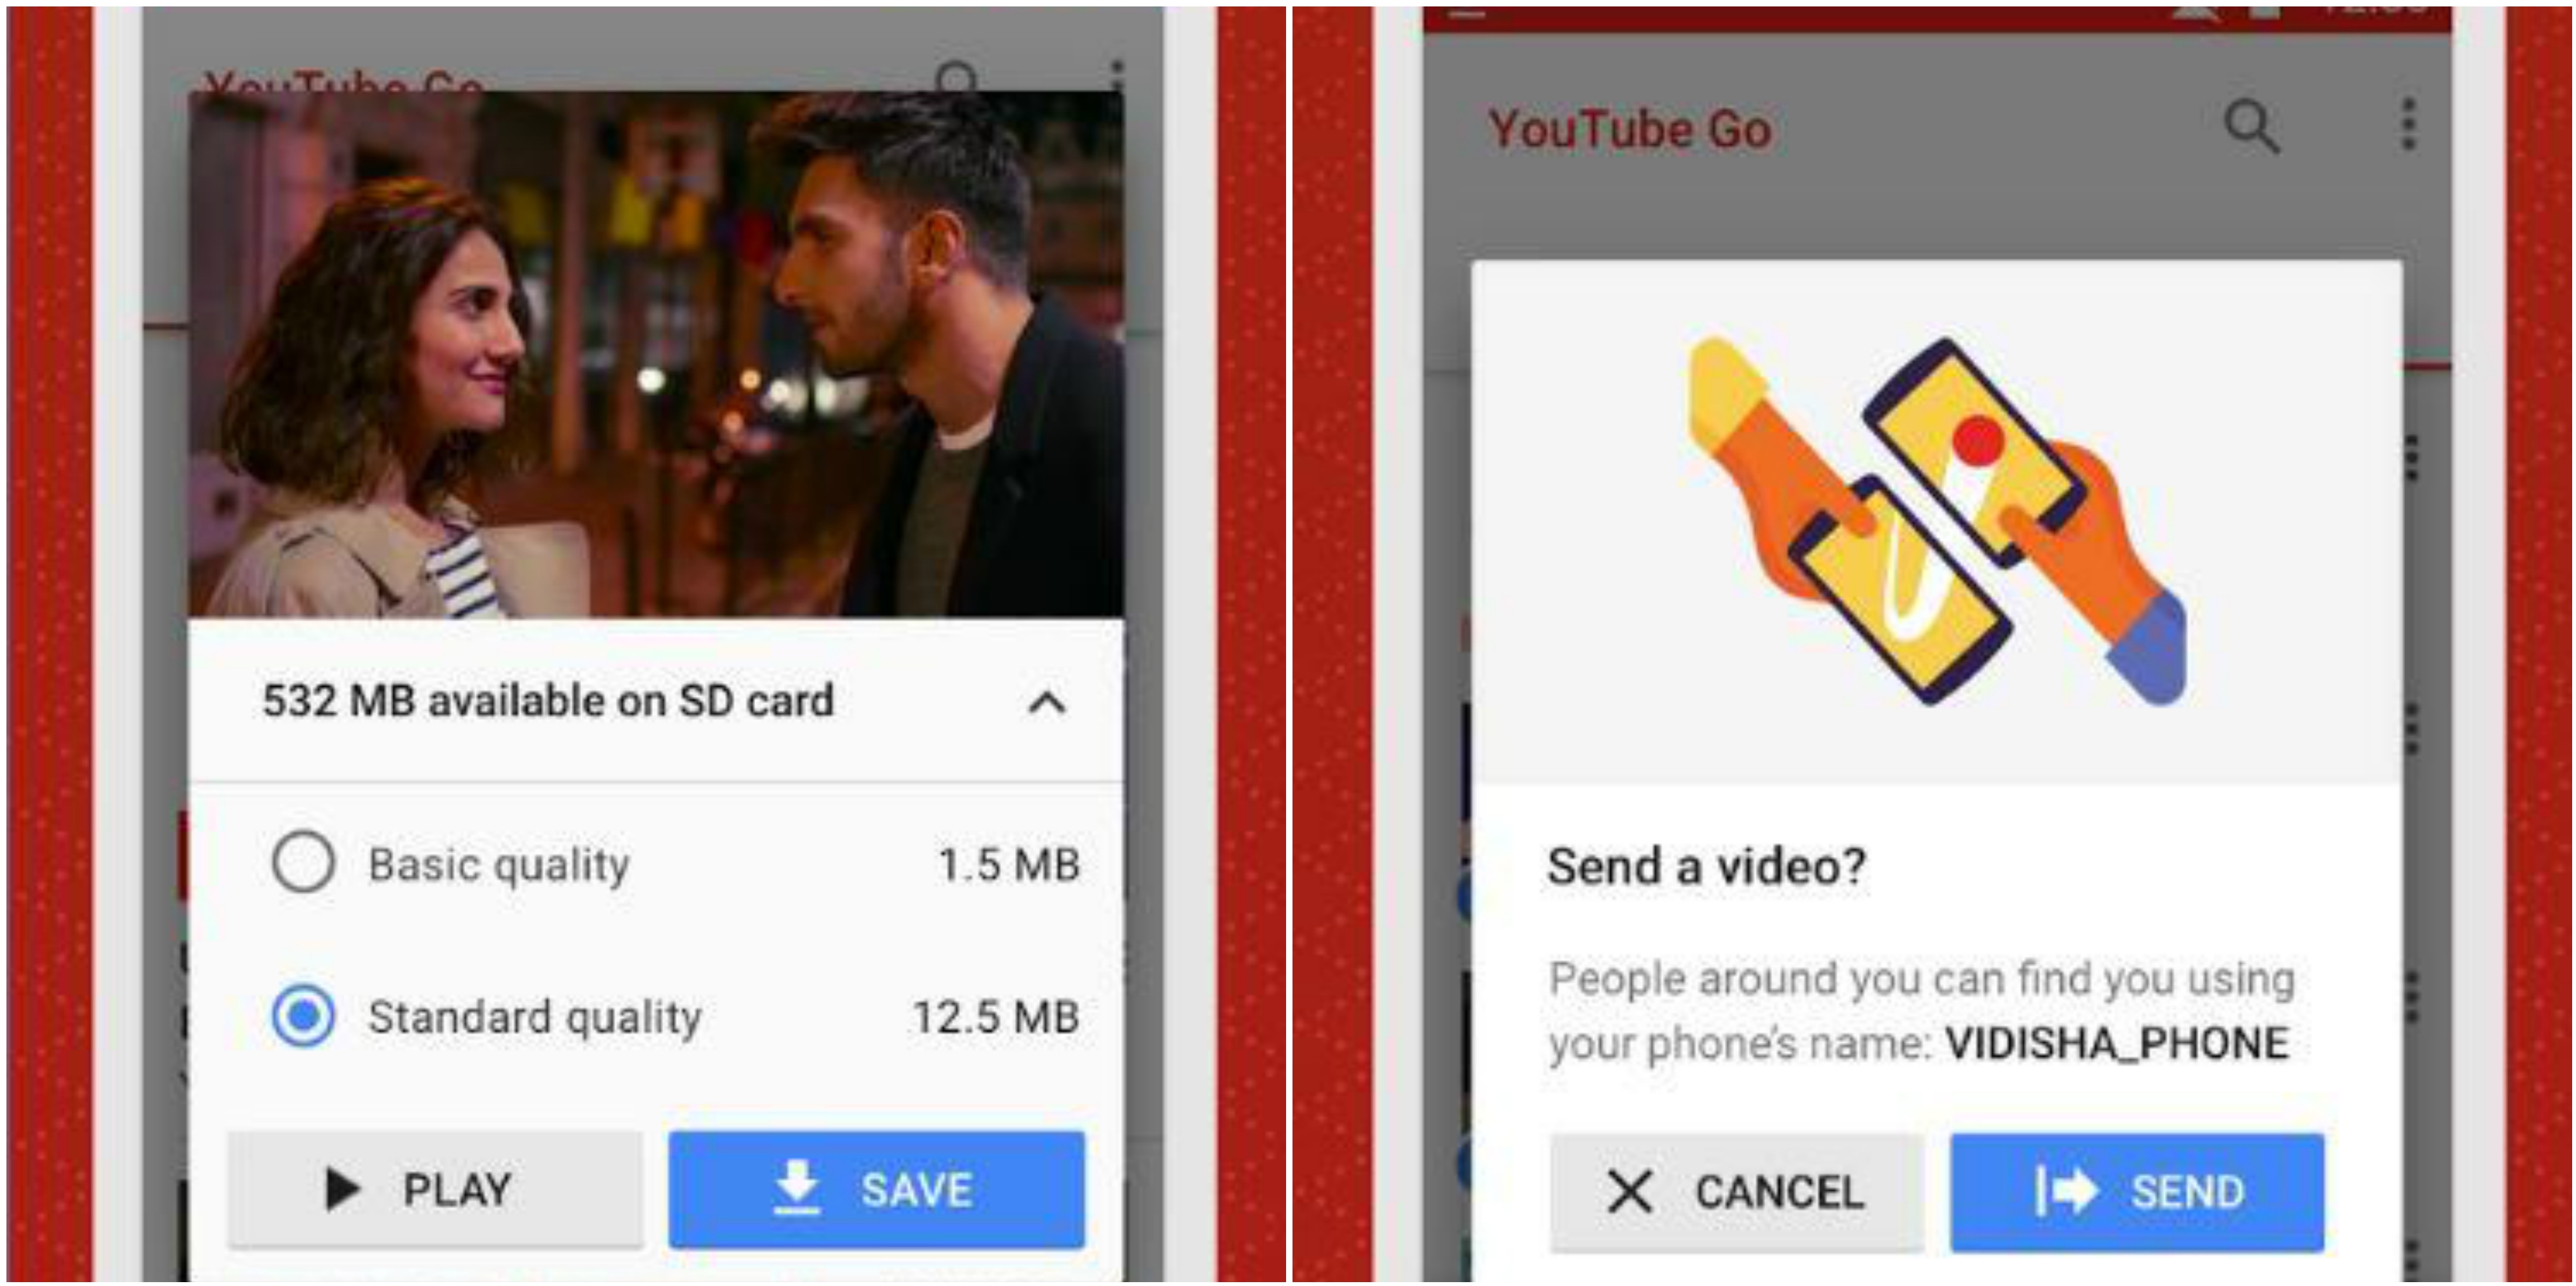 YouTube Go te permitirá descargar vídeos para verlos offline y ahorrar datos